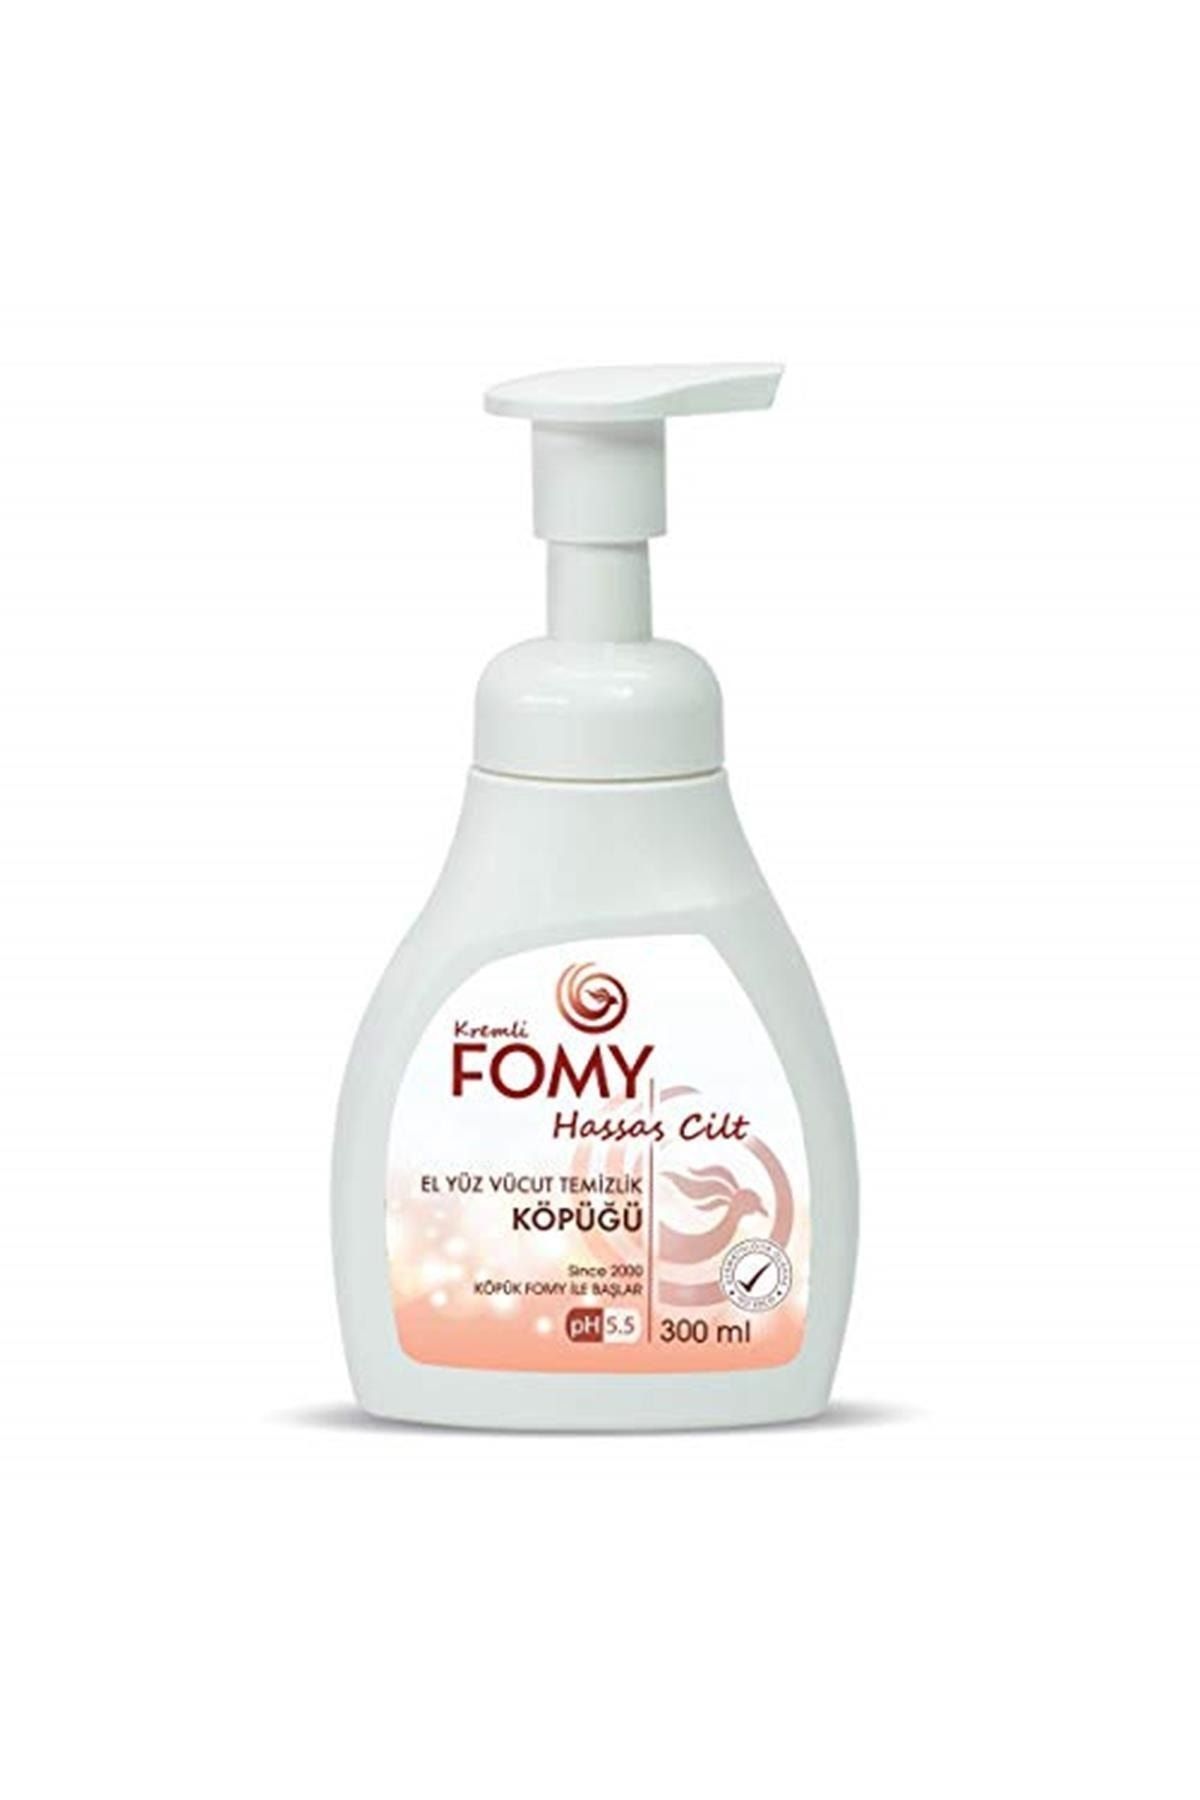 Fomy - Hassas Cilt / El Yüz Vücut Temizlik Köpüğü // 300 ml